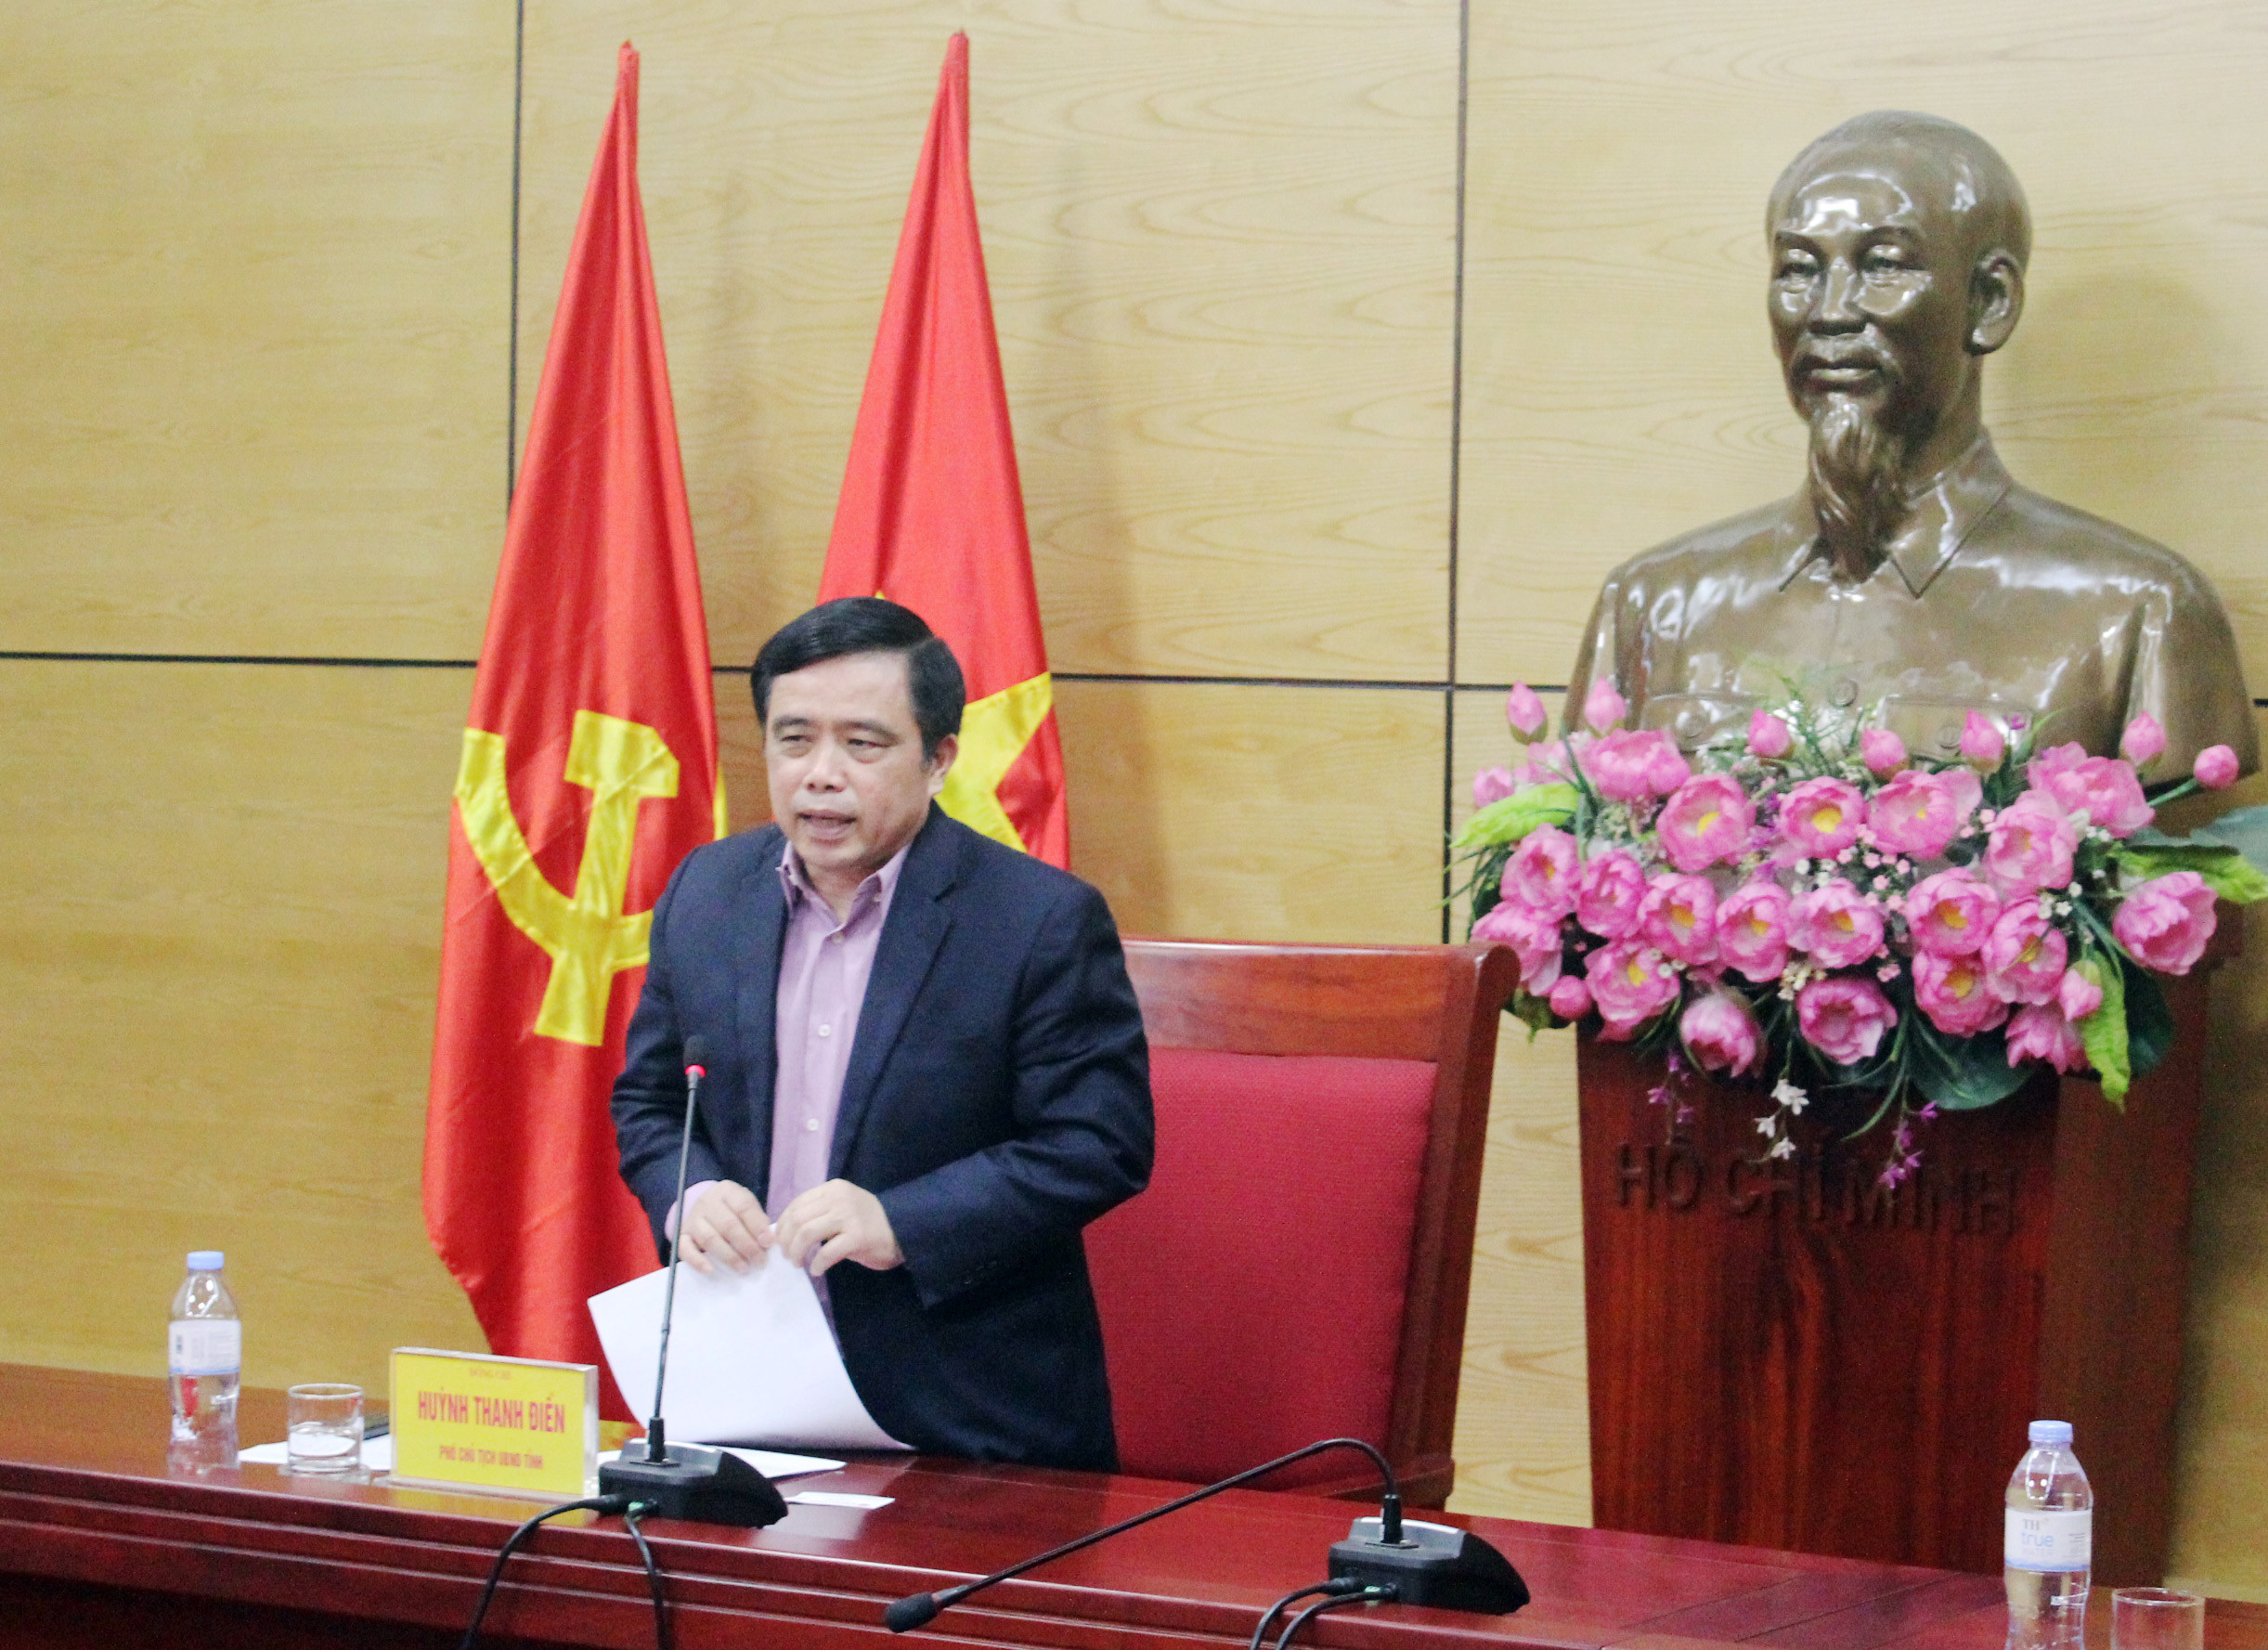 Phó chủ tịch UBND tỉnh Huỳnh Thanh Điền phát biểu giao nhiệm vụ cho các sở ngành liên quan để triển khai mở đường bay Vinh - Băng Cốc. Ảnh Thu Huyền